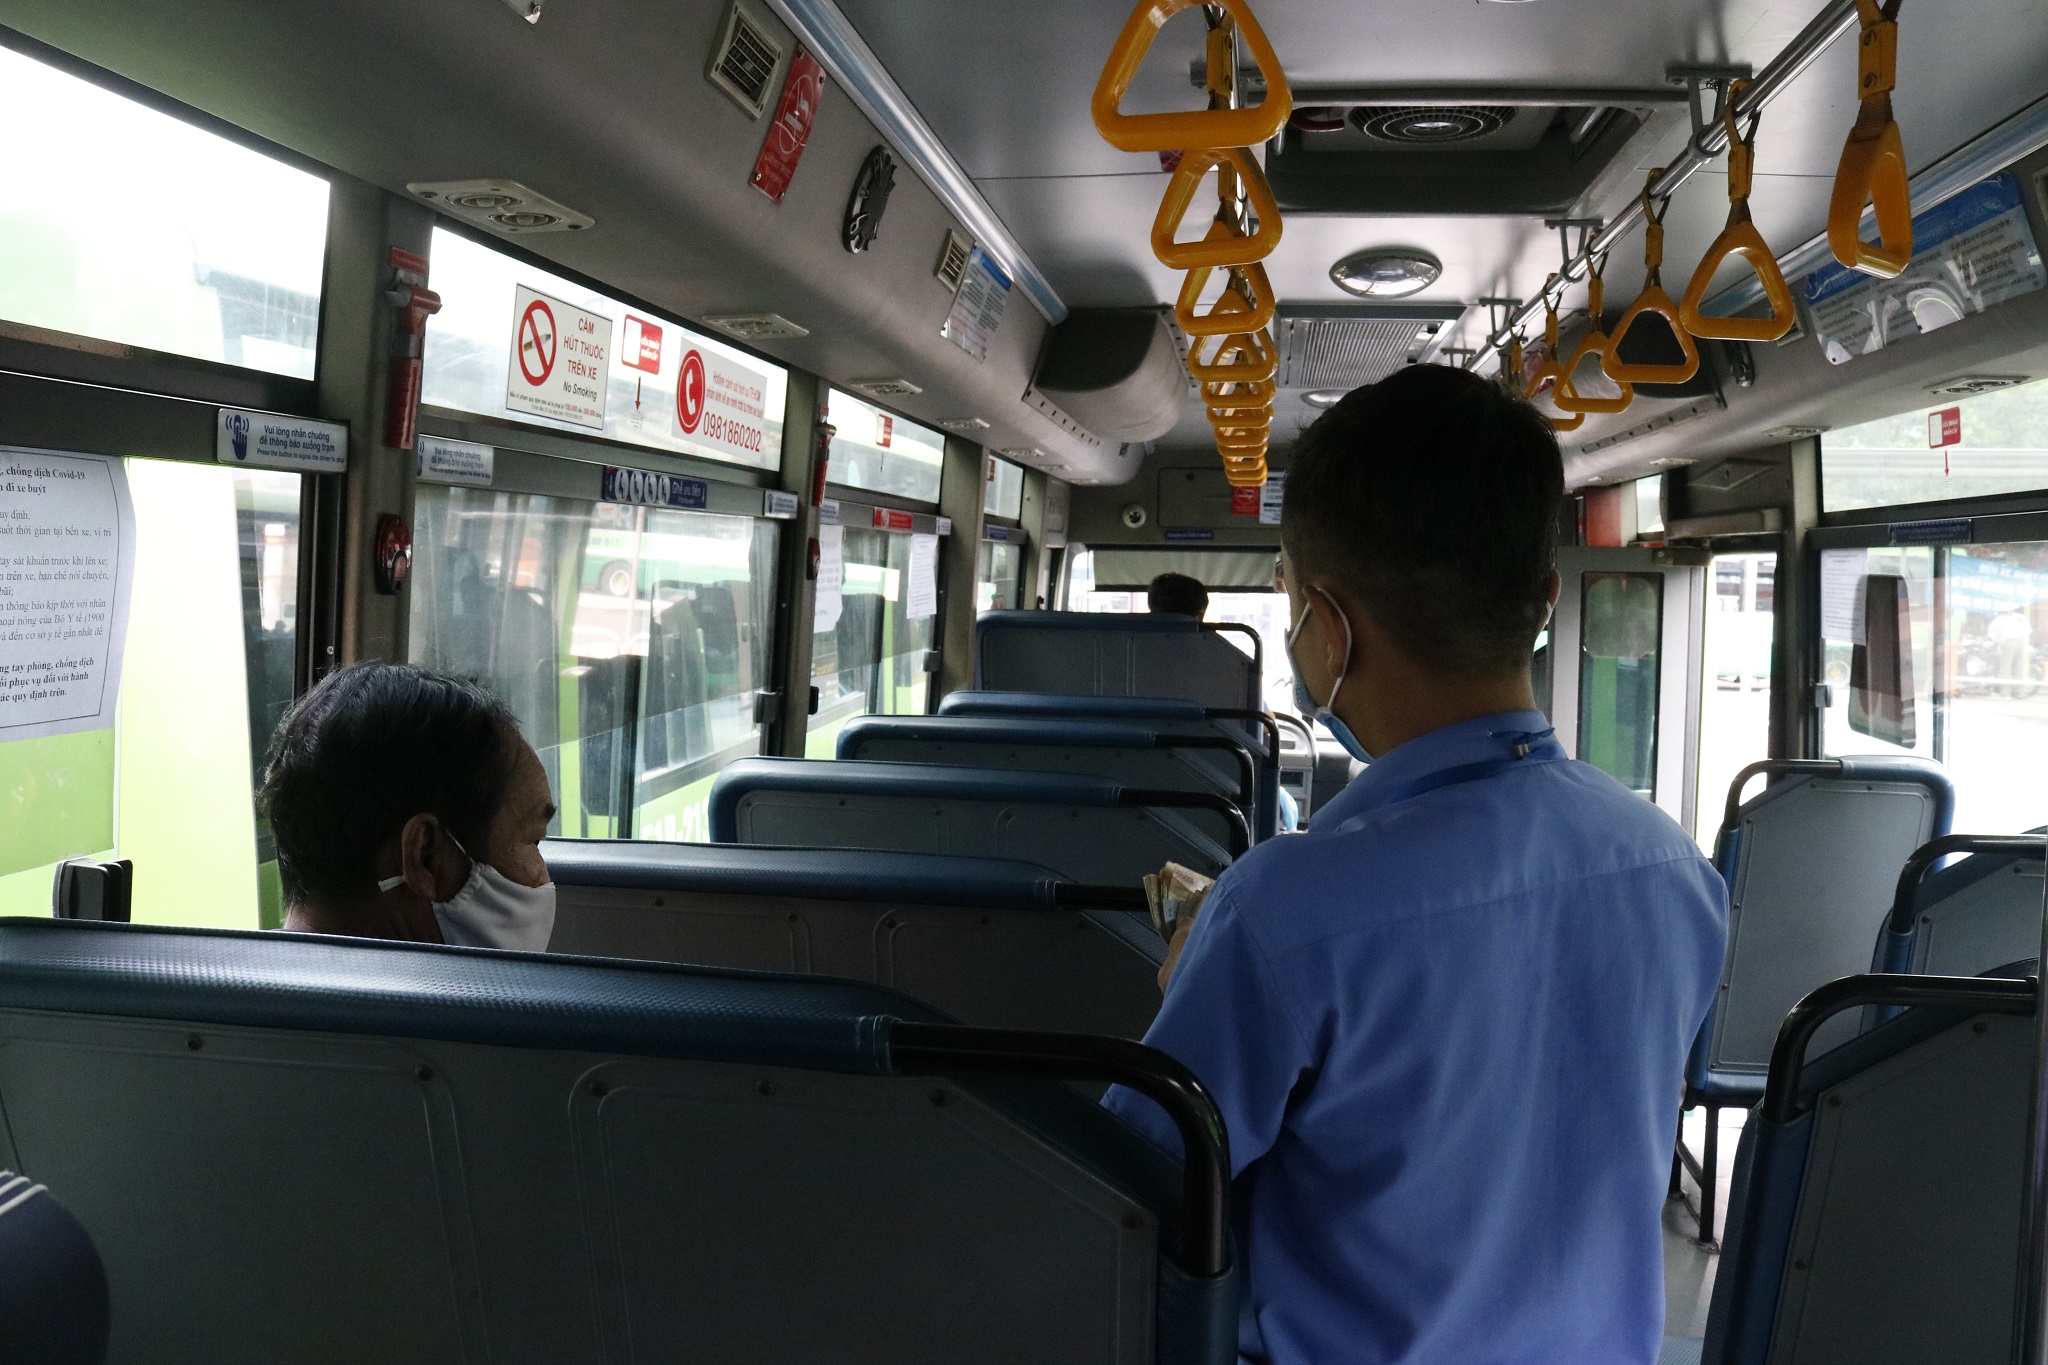 Xe buýt giãn cách giúp giảm rủi ro lây nhiễm, đảm bảo an toàn cho người sử dụng. Để biết thêm về cách xe buýt giãn cách được triển khai, xem hình ảnh liên quan.